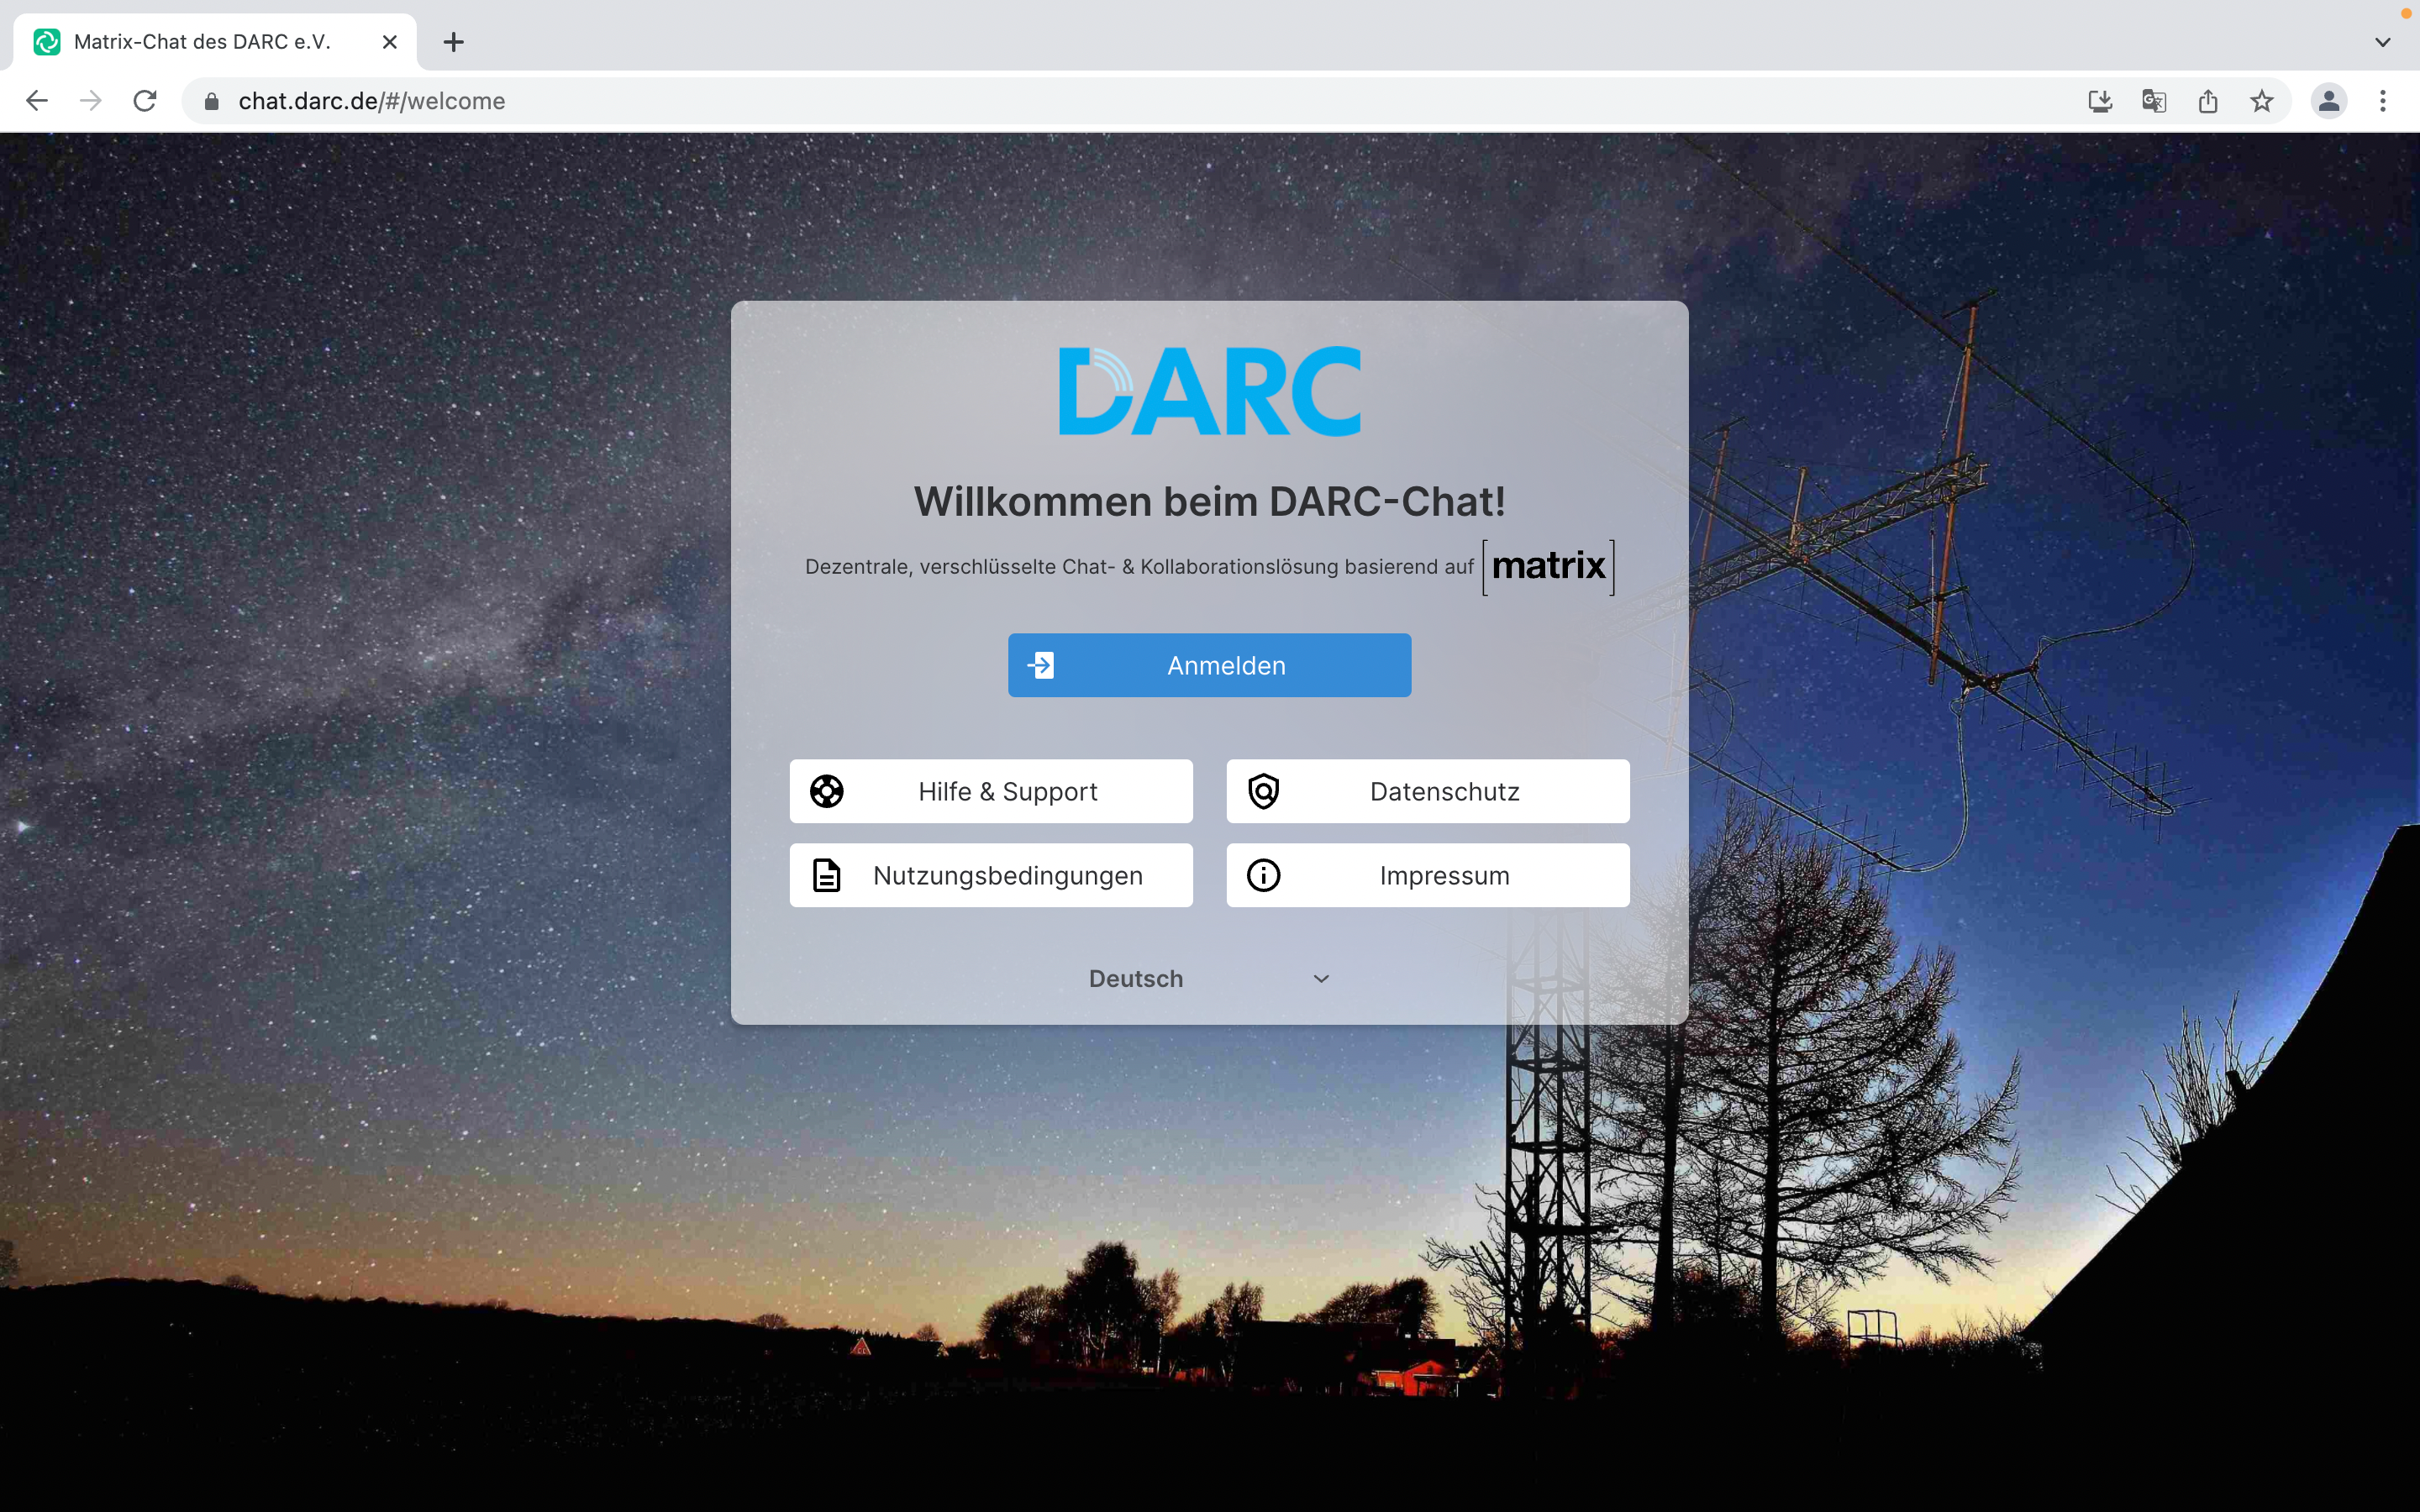 Willkommensbildschirm des DARC Element Web Clients